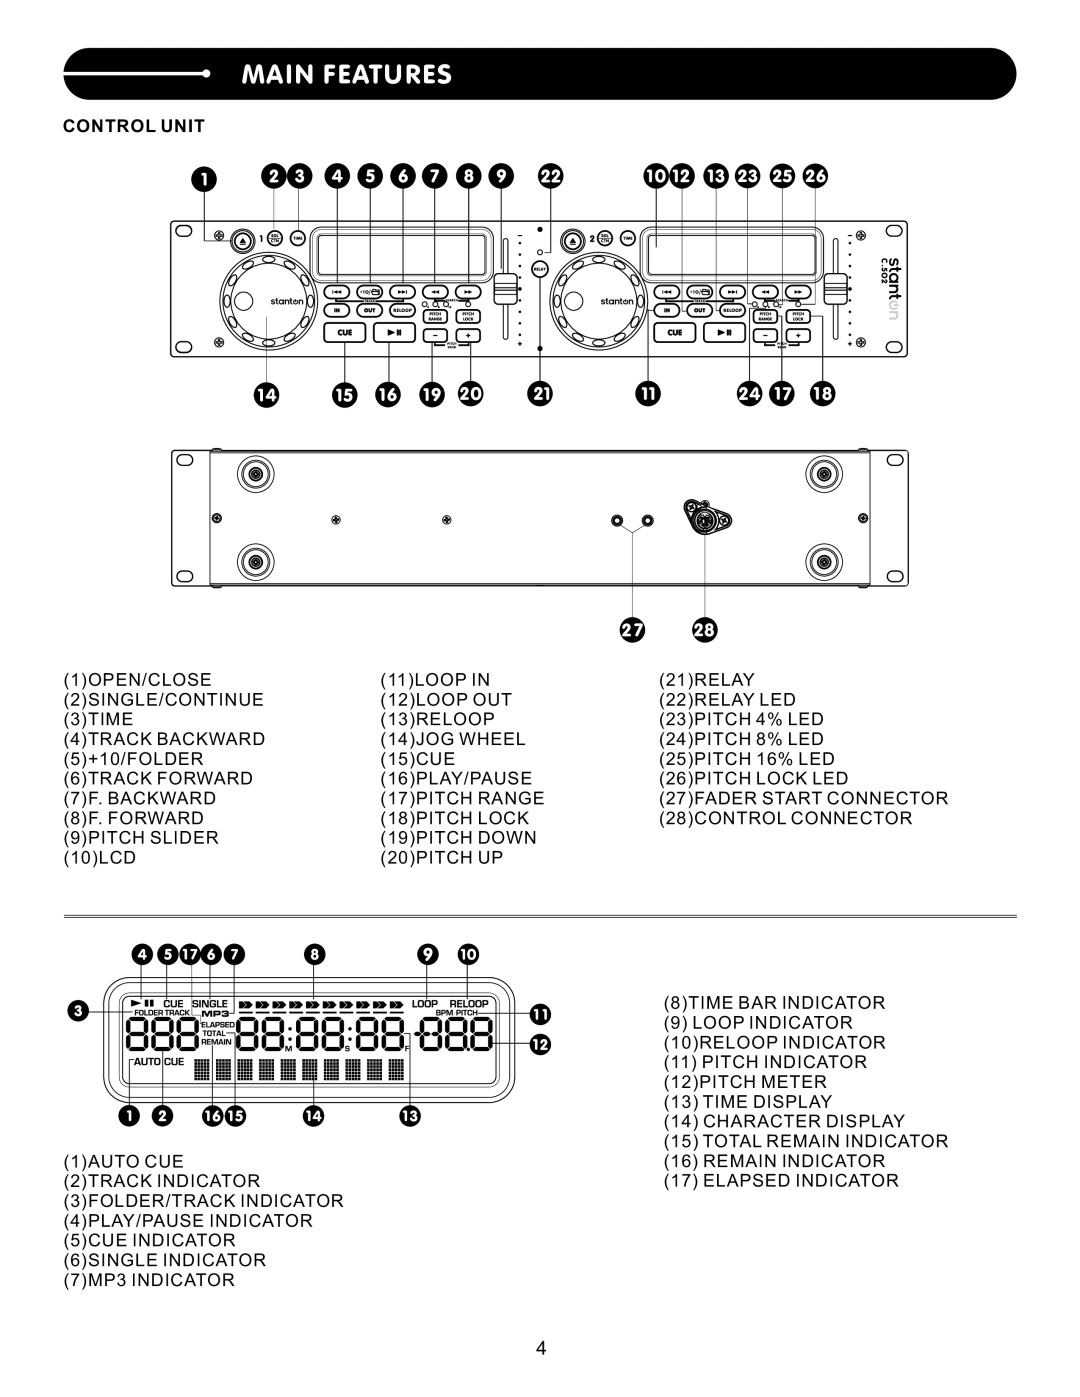 Stanton C.502 user manual Main Features, Control Unit 